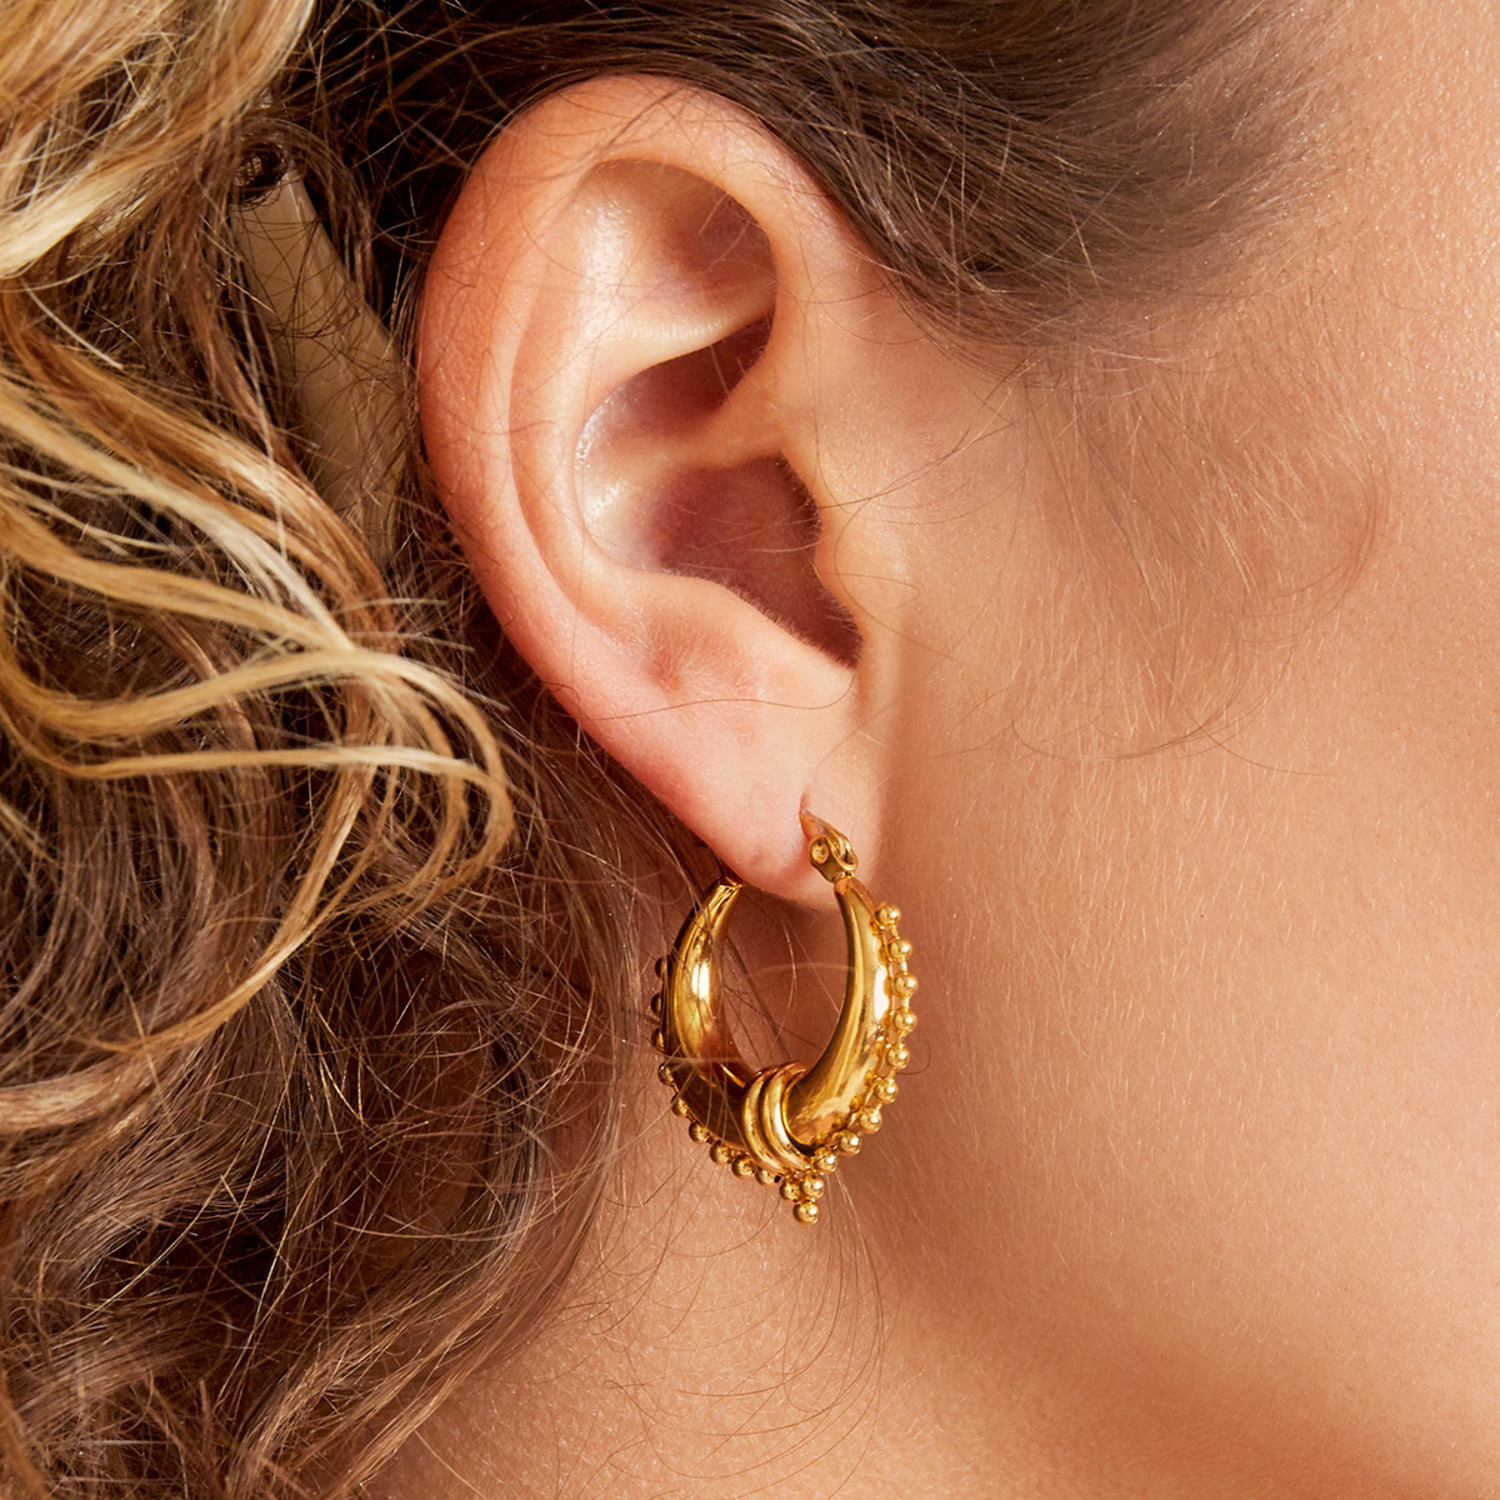 Buy New Model Hoop Earrings Gold Plated Ad Stone Daily Wear Bali Earrings  Design